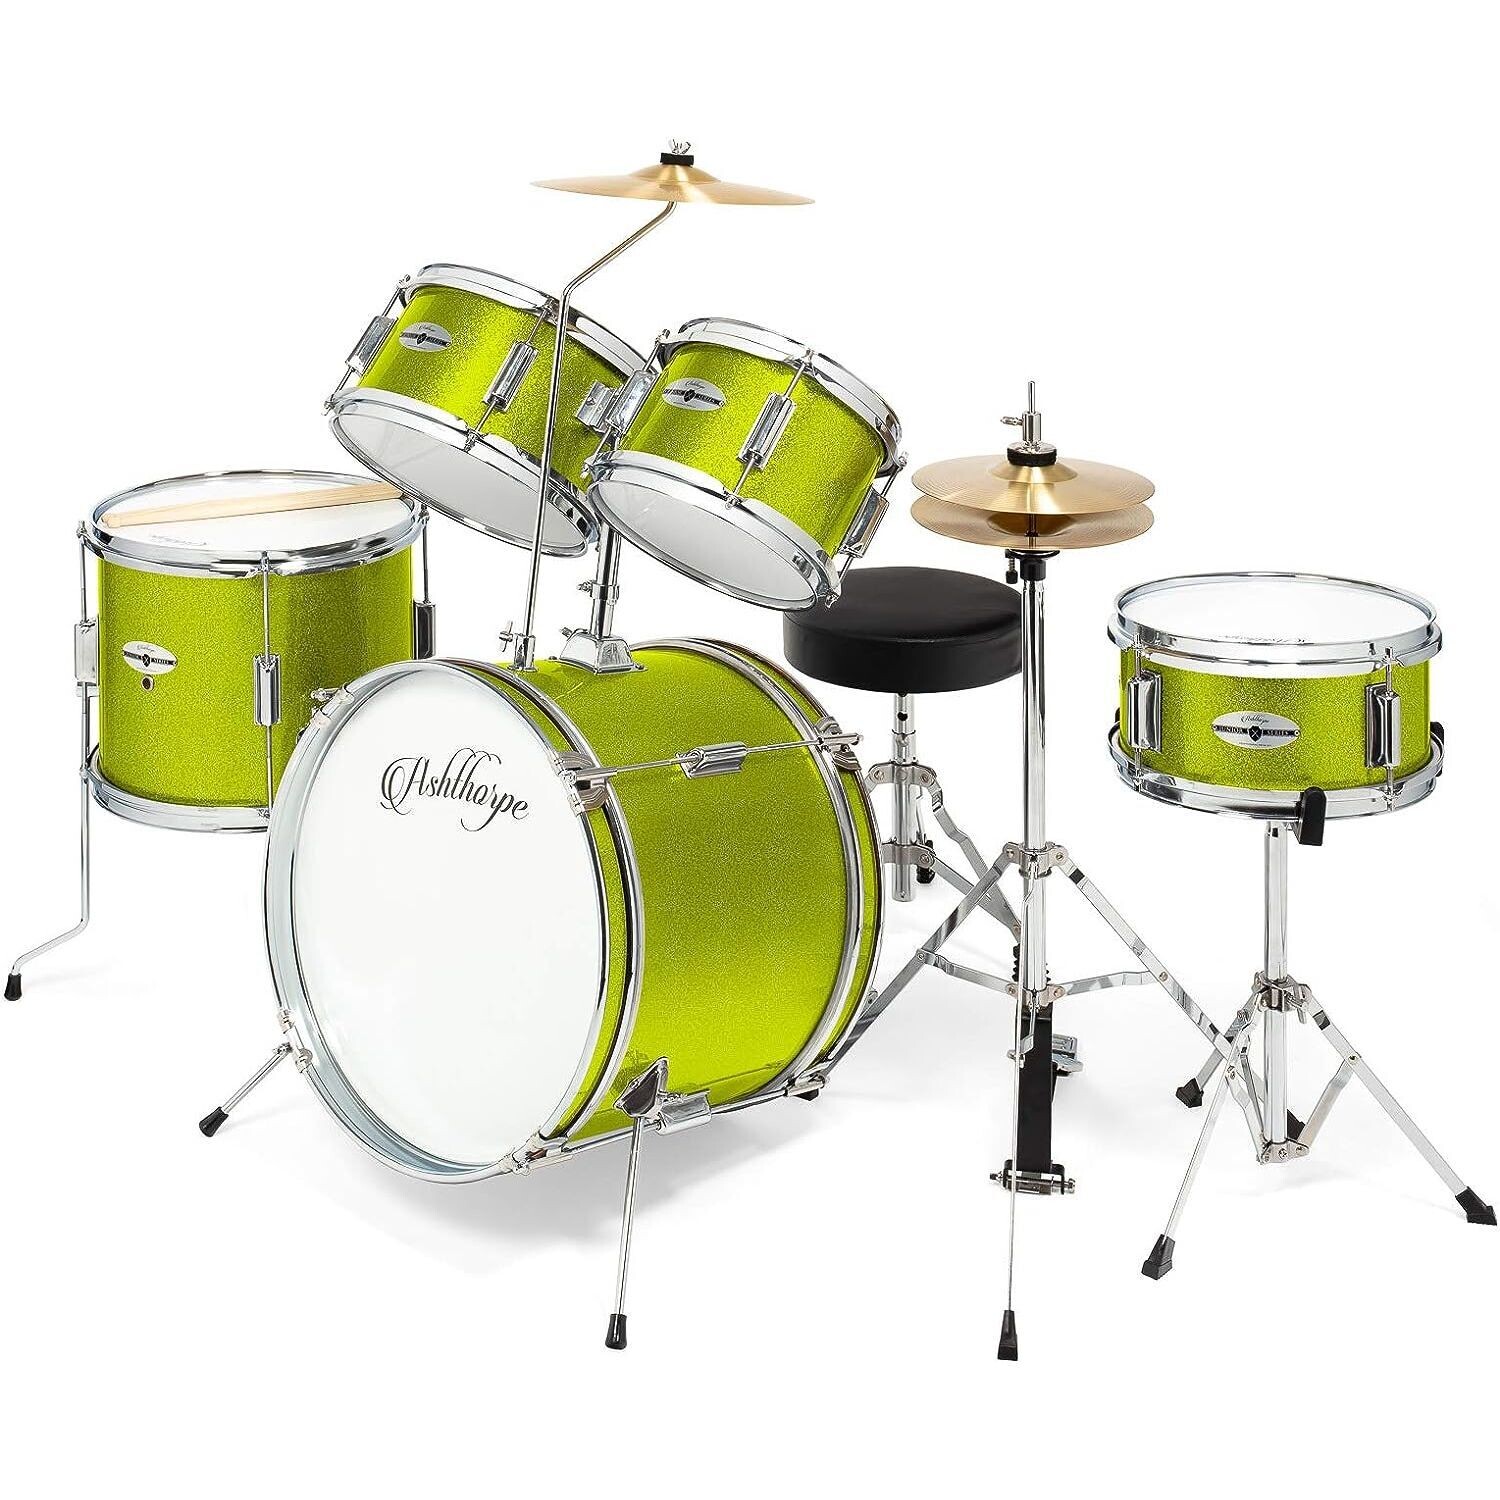 LW Essentials Basic 5-Piece Junior Kids Drum Set with Hardware - Lime Green